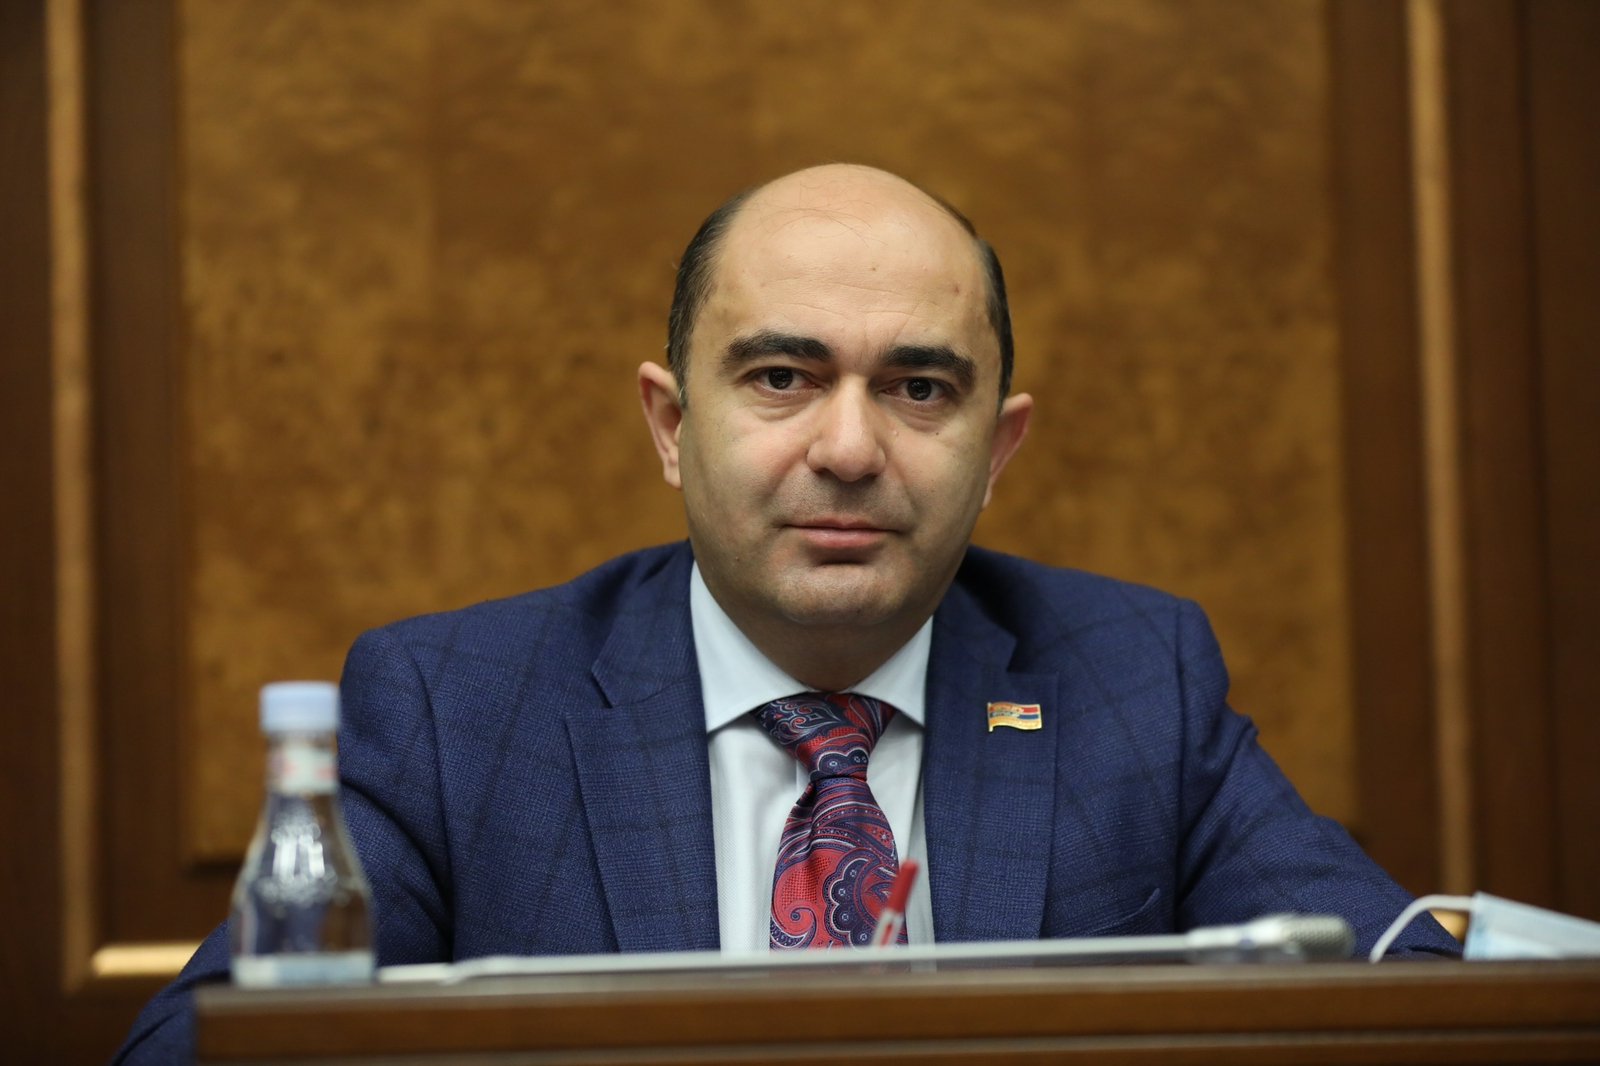 El embajador general de Armenia, sobre el Alto Karabaj: "No veo la luz al final del túnel"